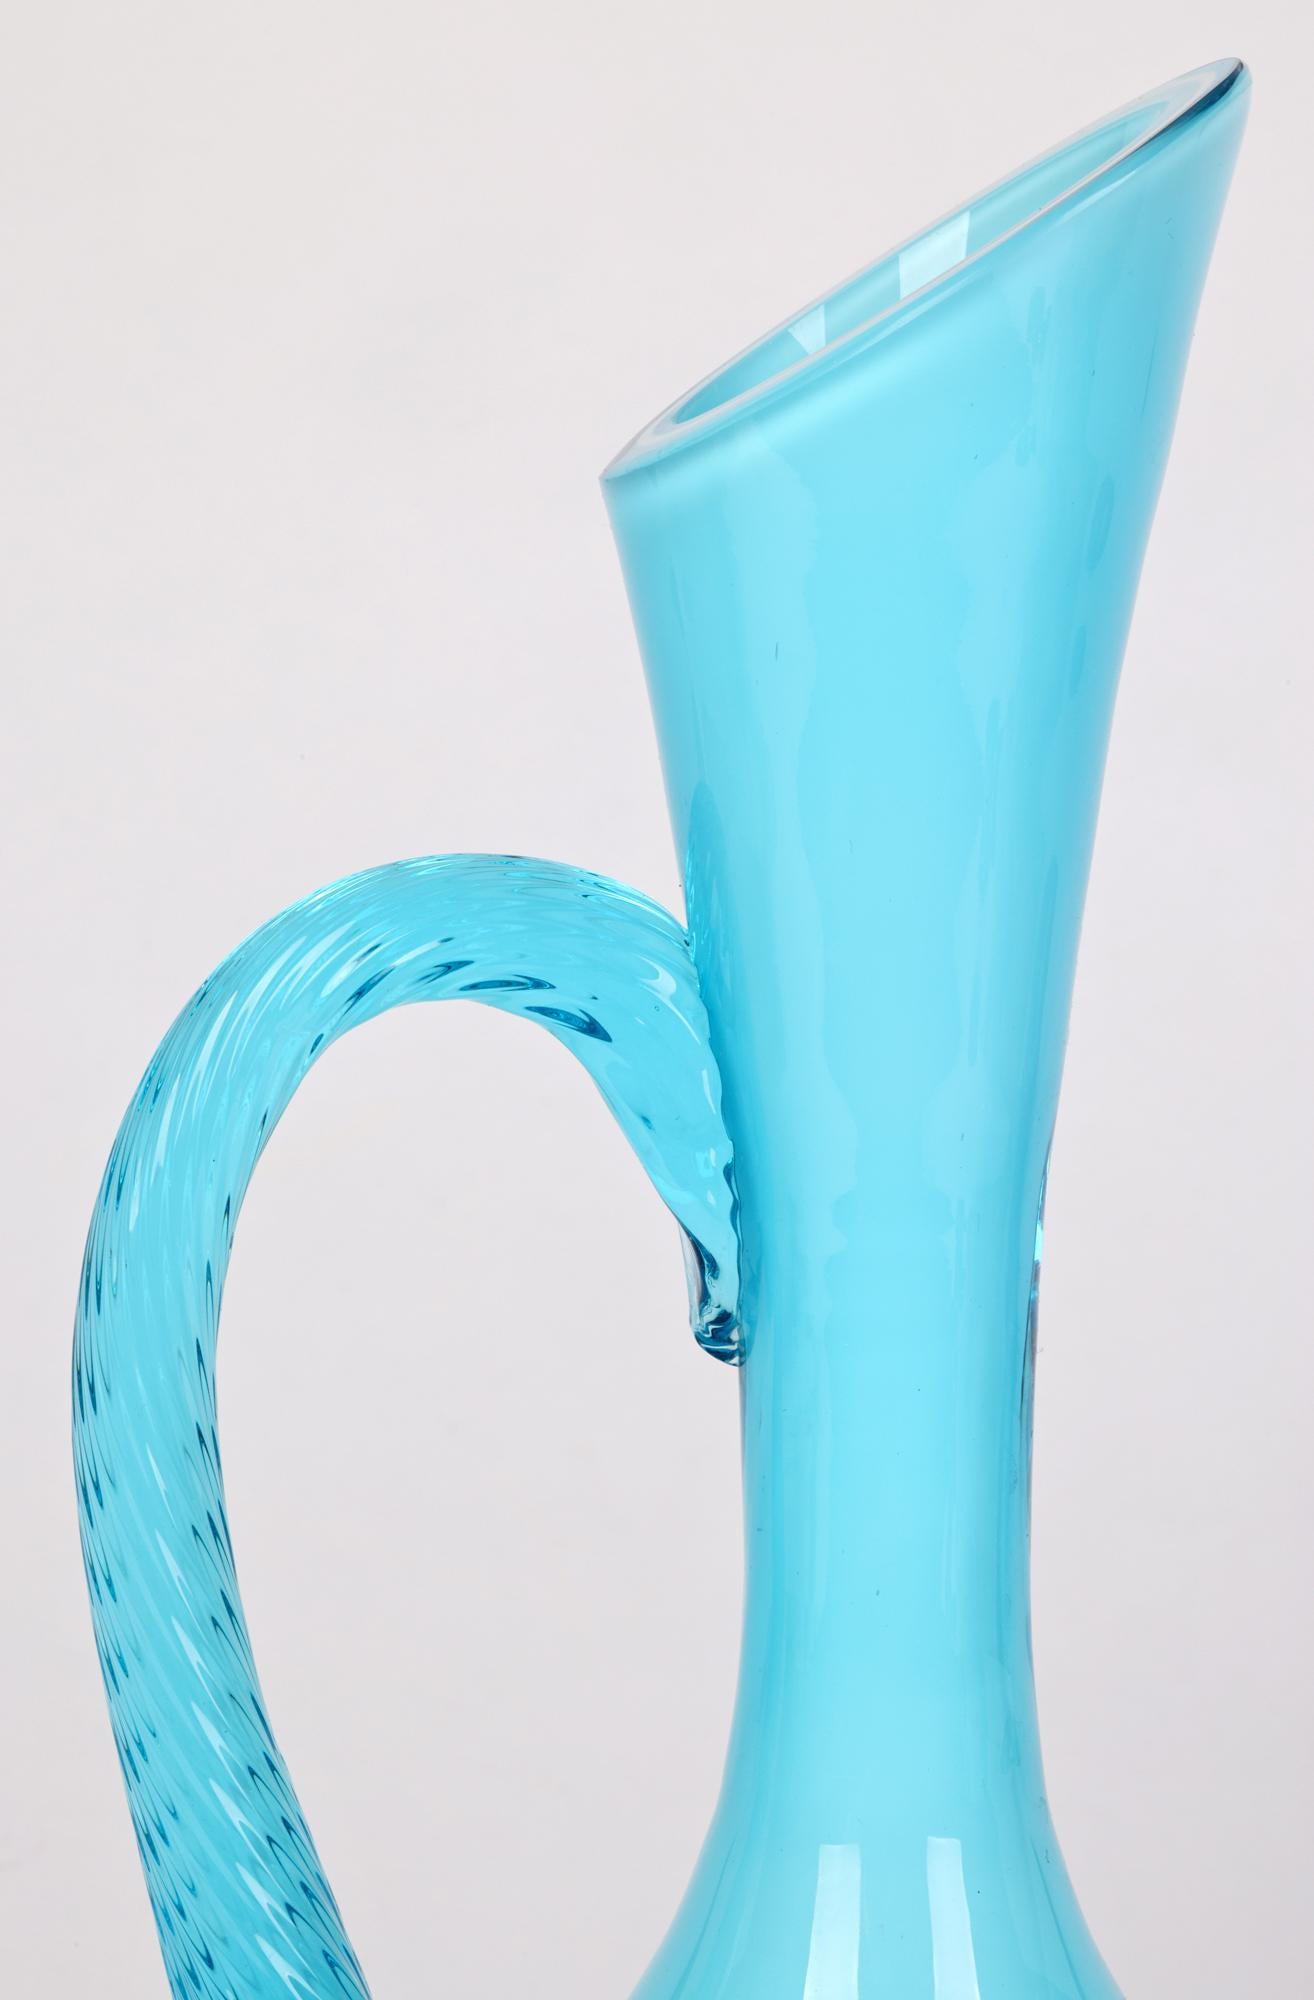 Une élégante cruche en verre d'art italienne du milieu du siècle, de couleur turquoise, signée Empoli. La cruche repose sur une base ronde et plate, avec un corps inférieur arrondi et bulbeux et un long col mince s'élargissant vers le haut. Le